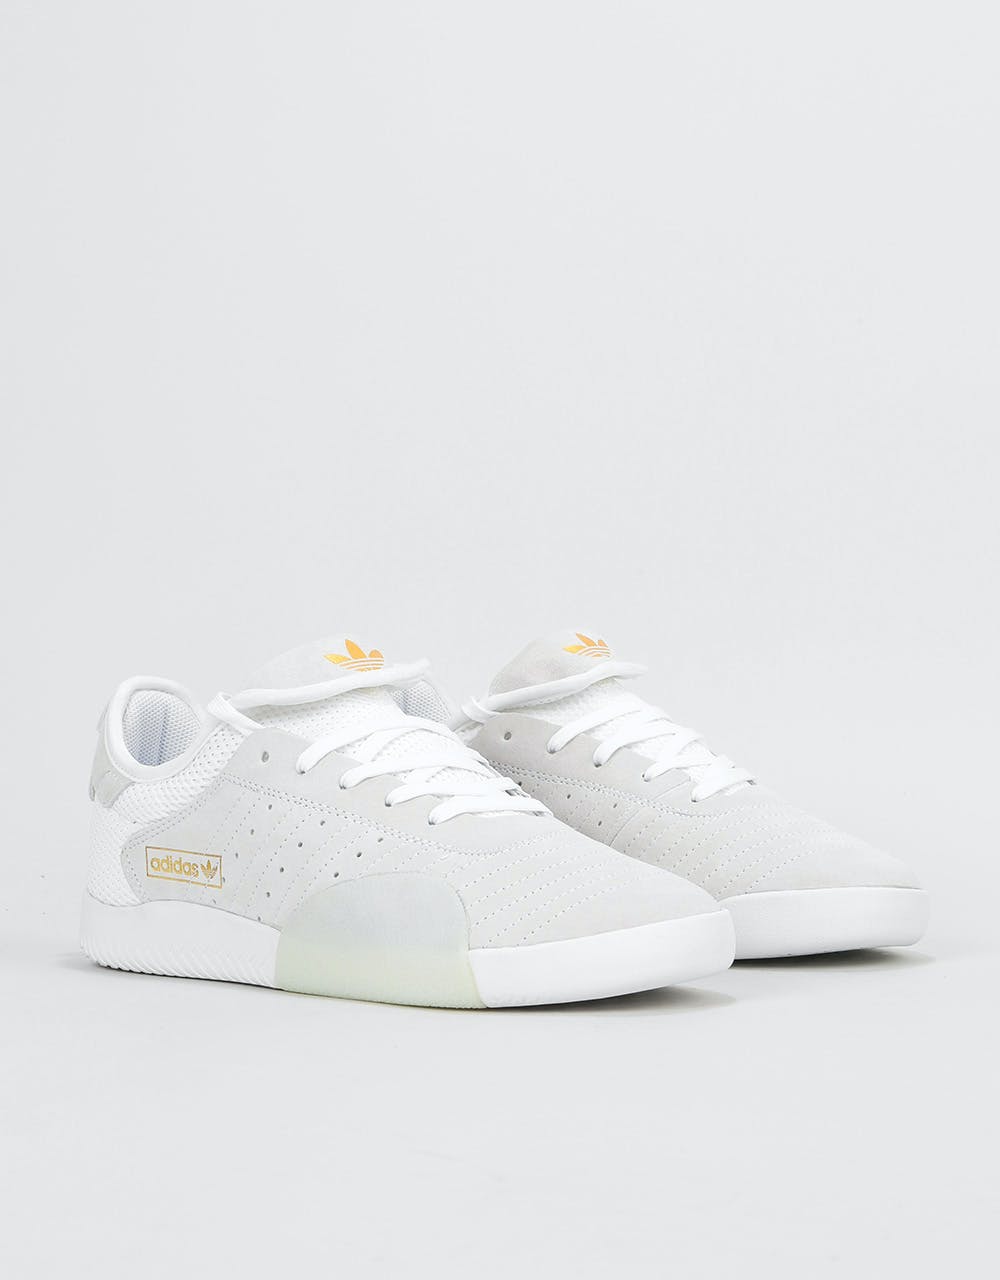 Adidas 3ST.003 Skate Shoes - White/Blue Tint/Gold Metallic